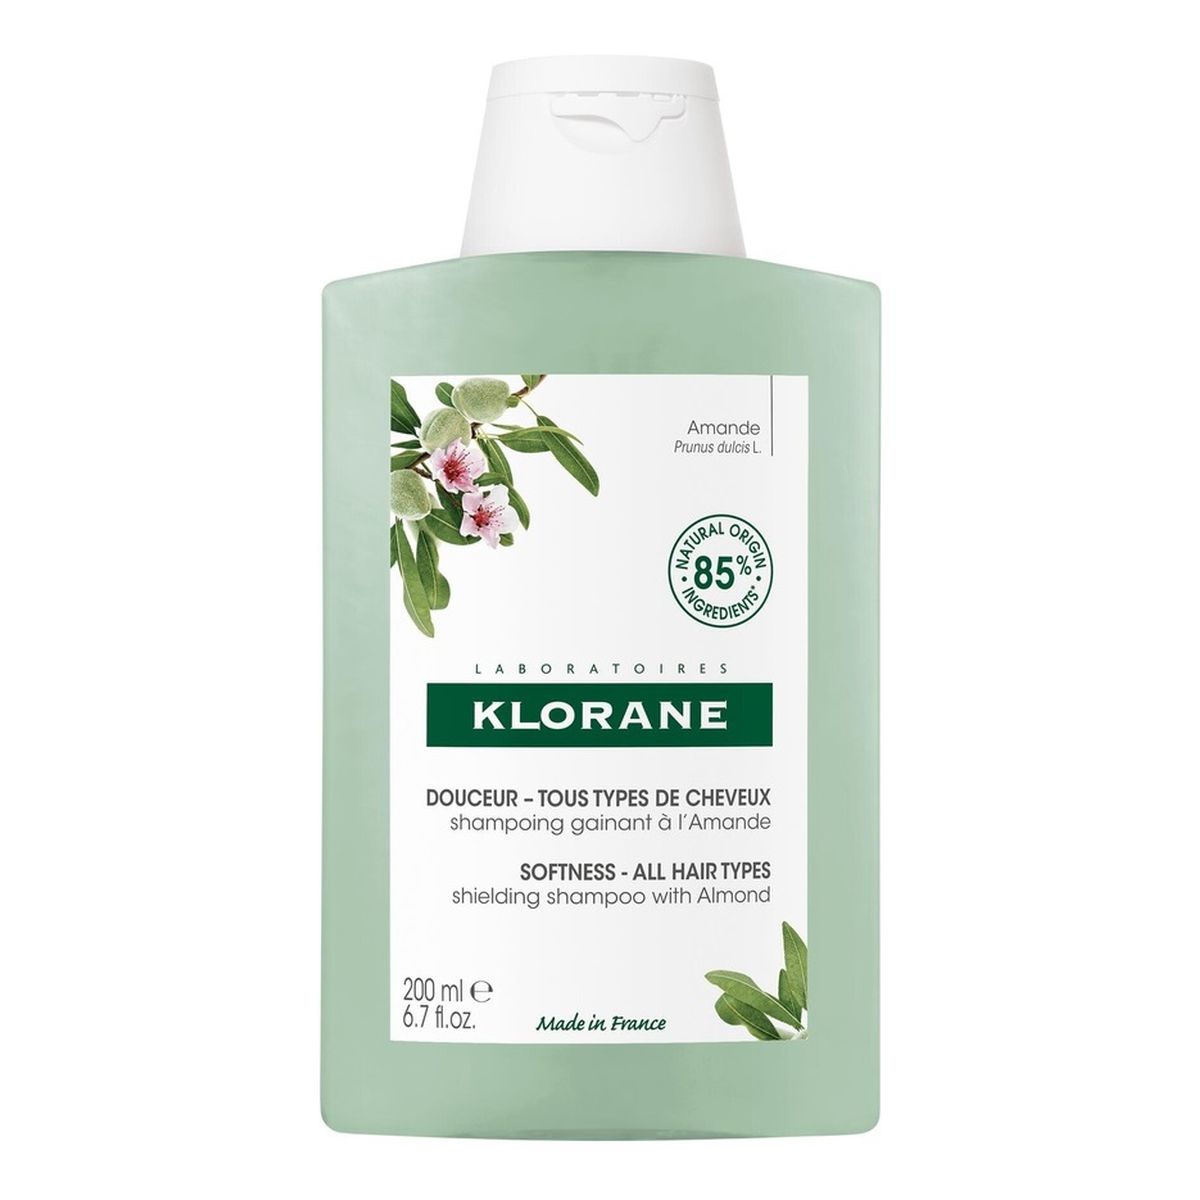 Klorane Shielding shampoo szampon do włosów nadający miękkość 200ml